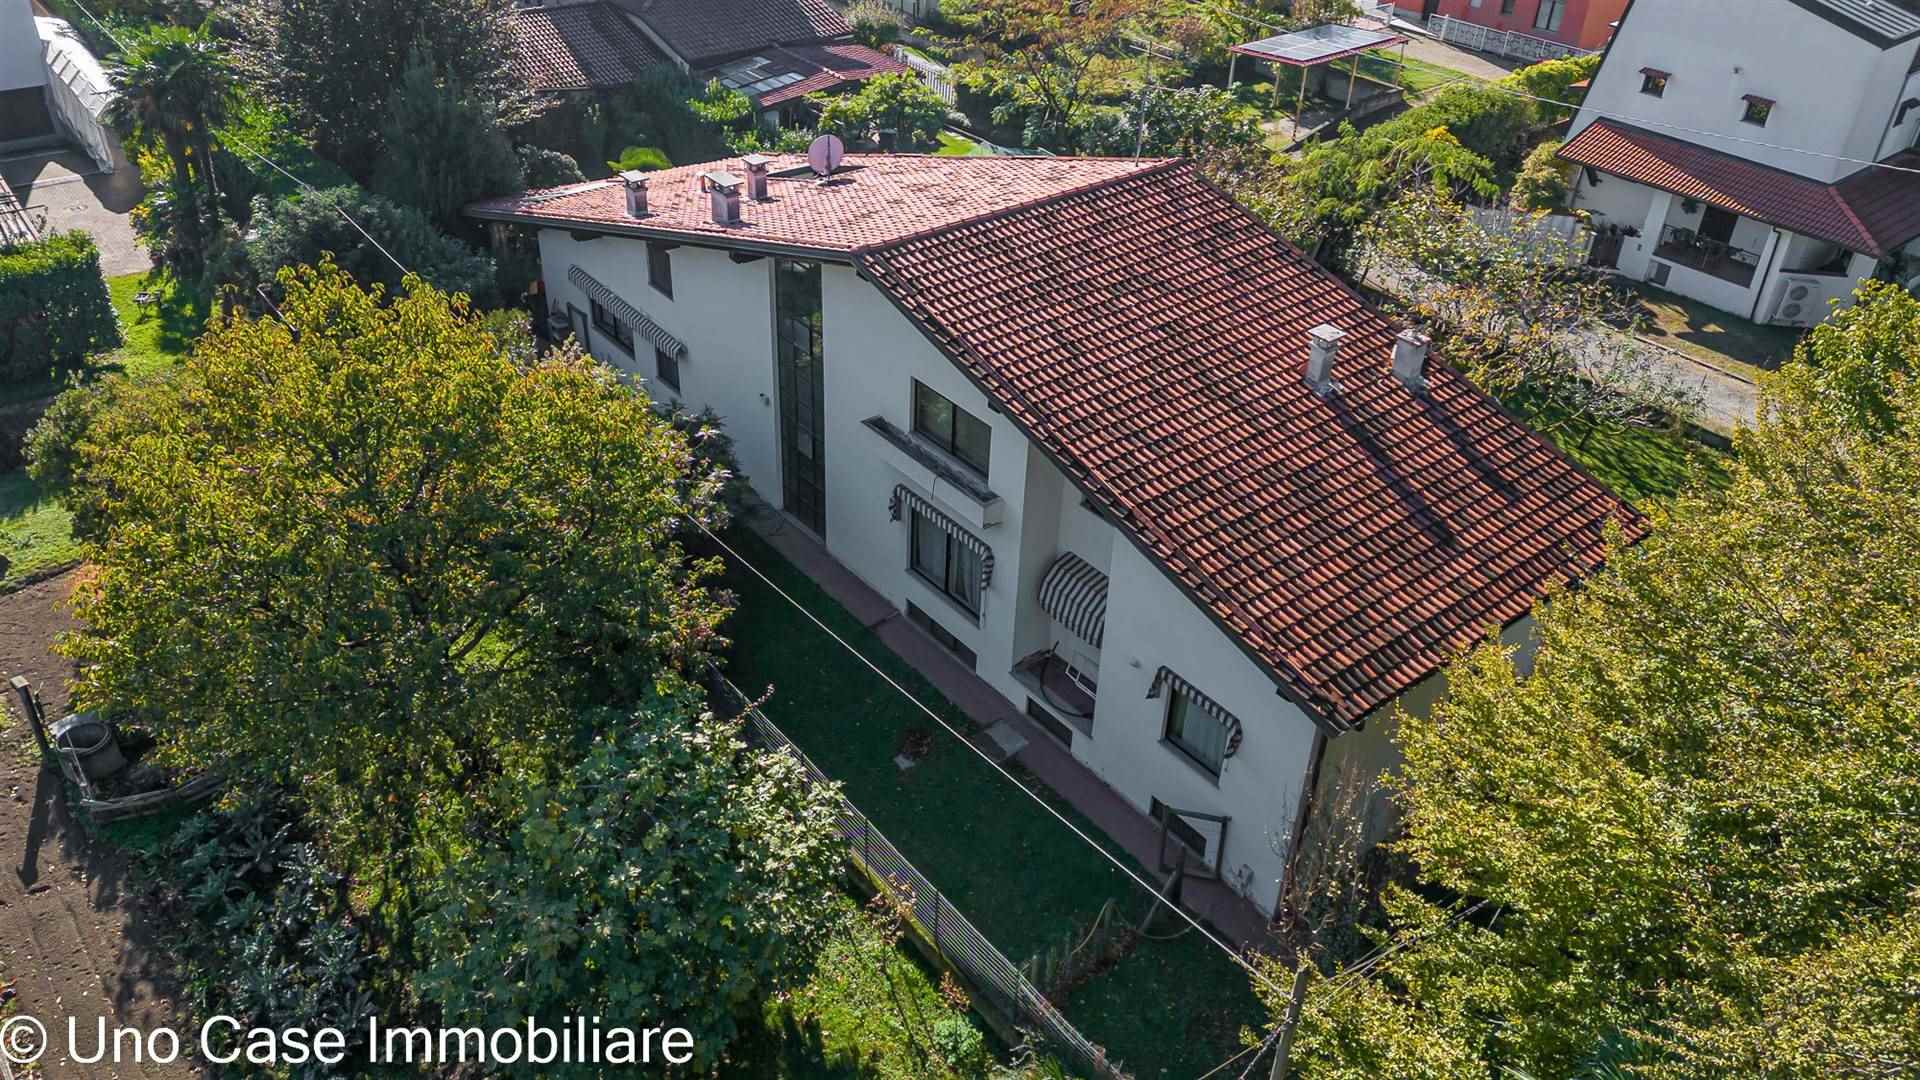 Villa in vendita a Borgofranco d'Ivrea, 7 locali, prezzo € 289.000 | CambioCasa.it